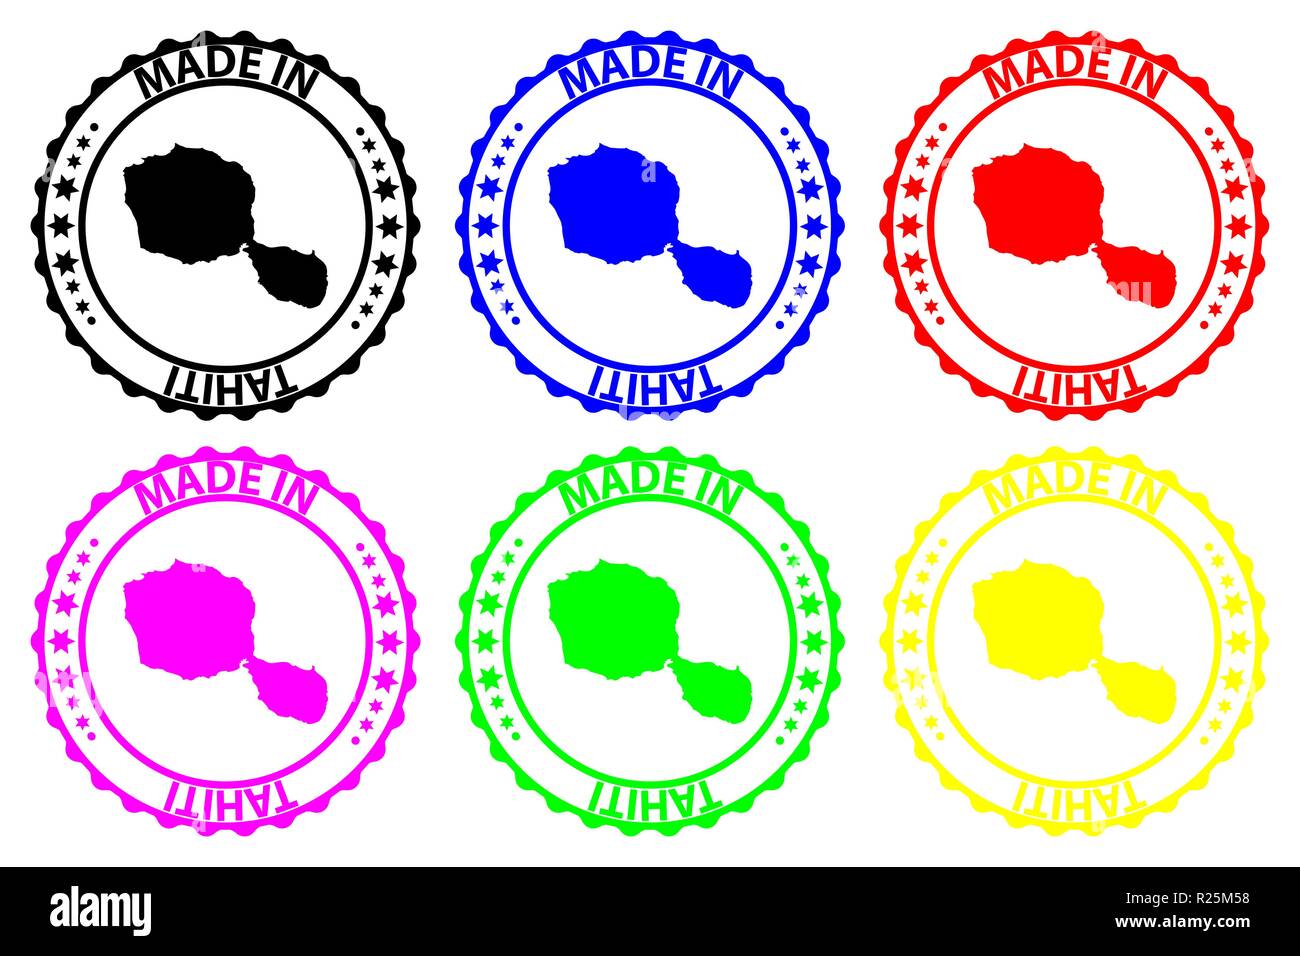 Fait à Tahiti - timbres en caoutchouc - vecteur, Tahiti carte - noir, bleu, vert, jaune, violet et rouge Illustration de Vecteur